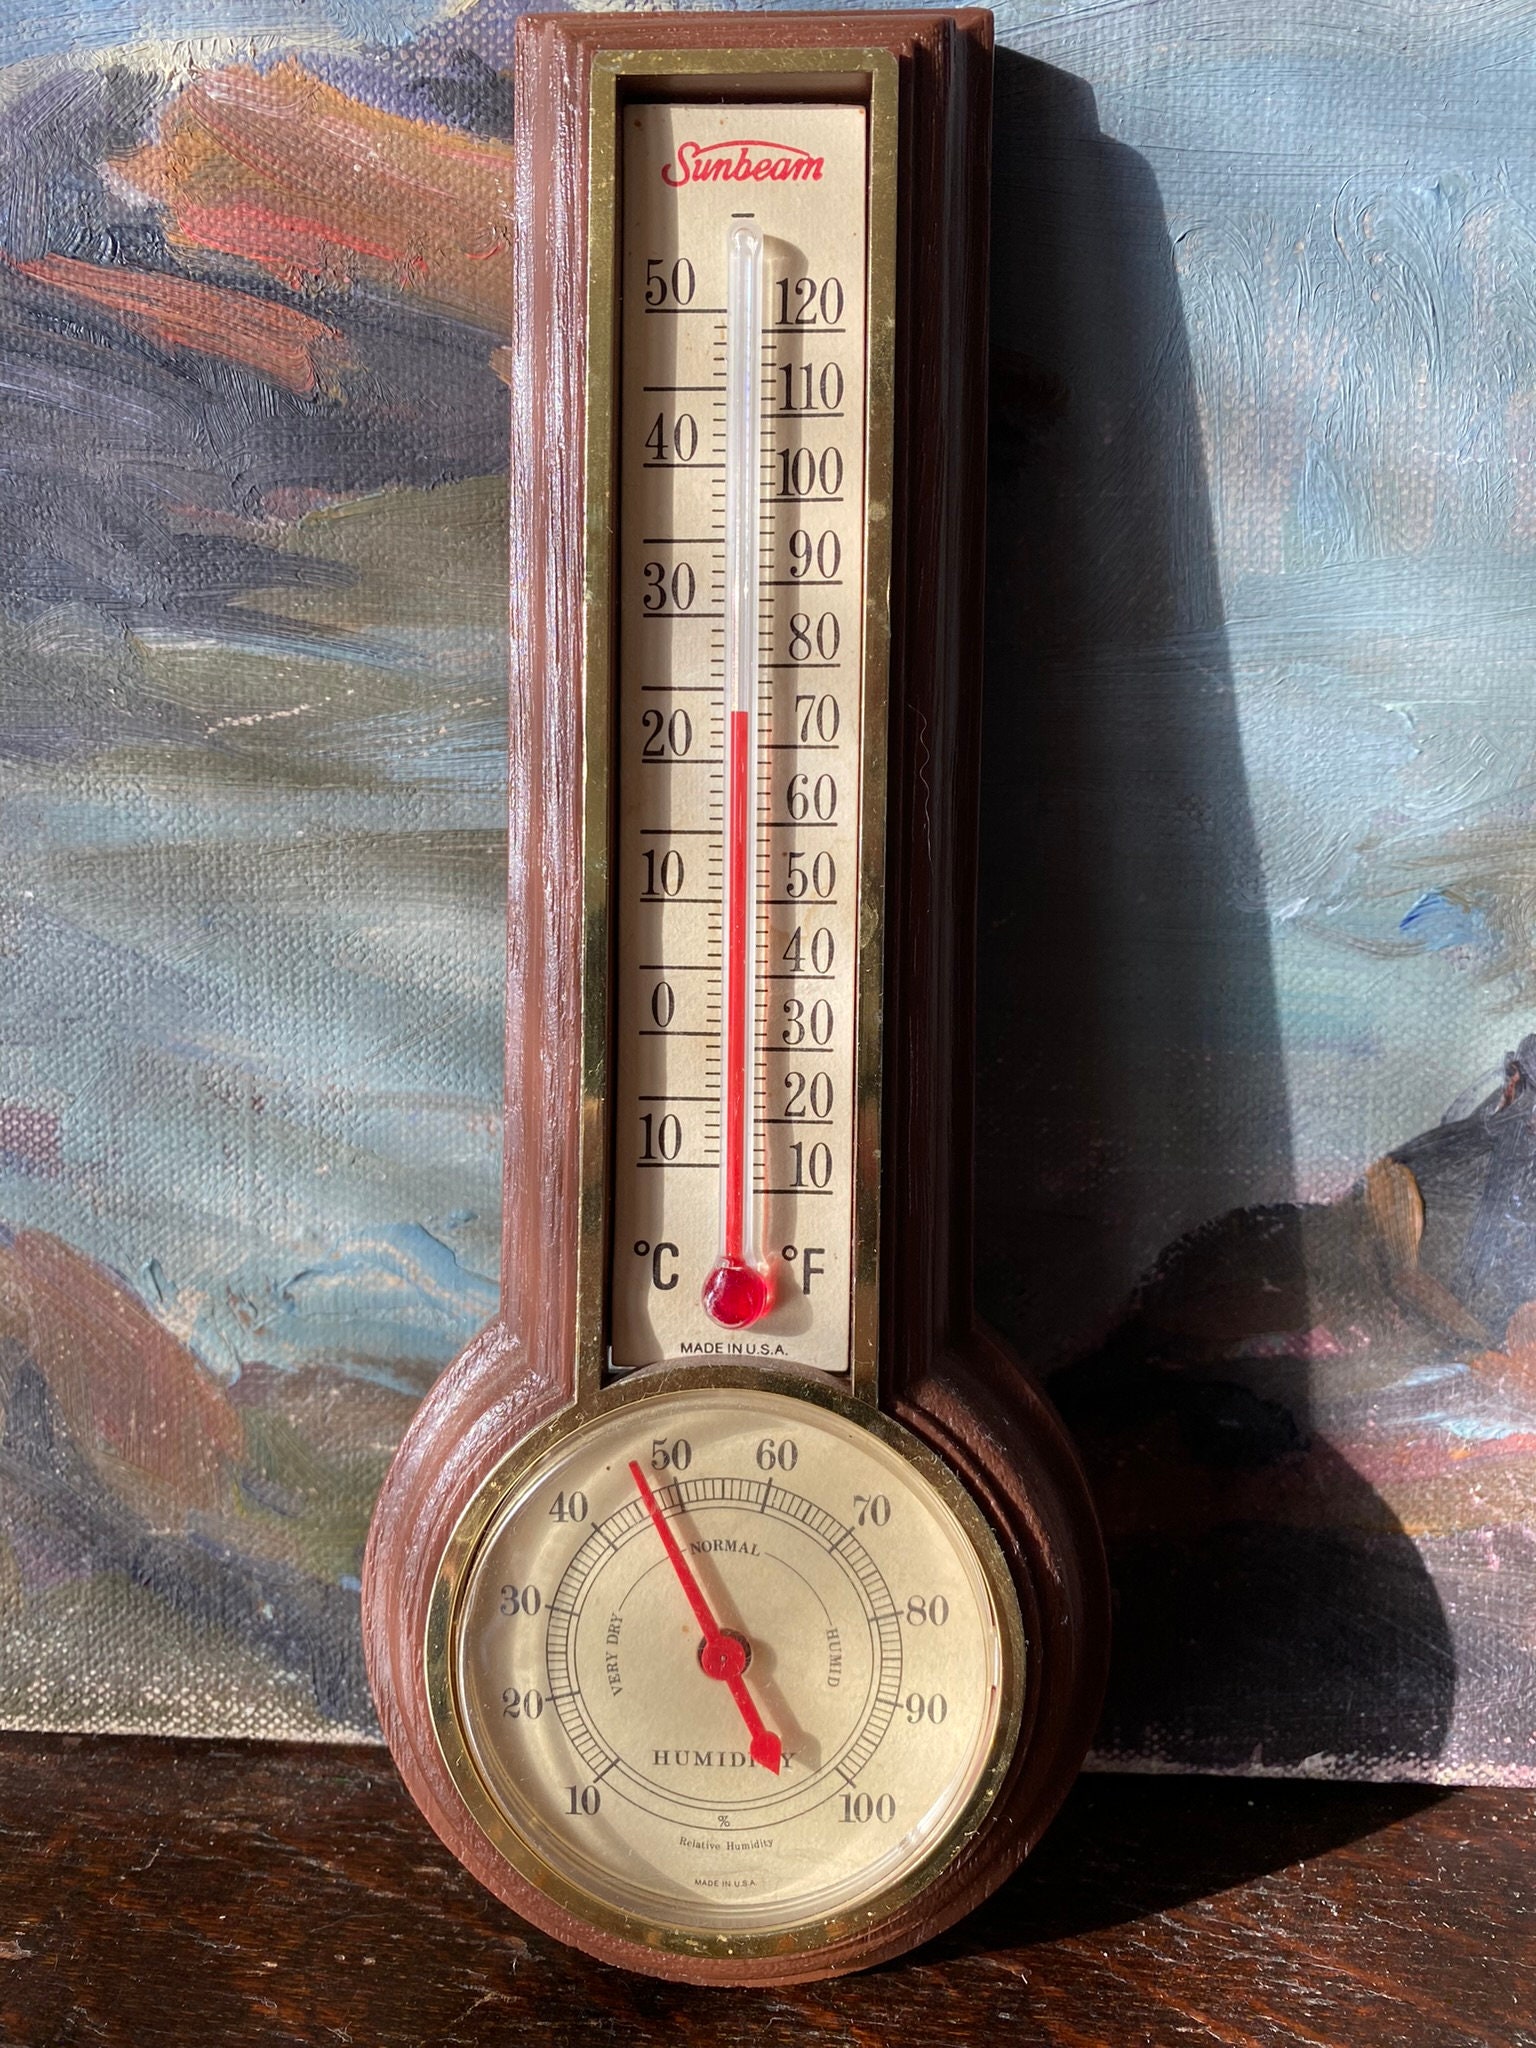 Vintage Sunbeam Thermometer/humidity Gauge 